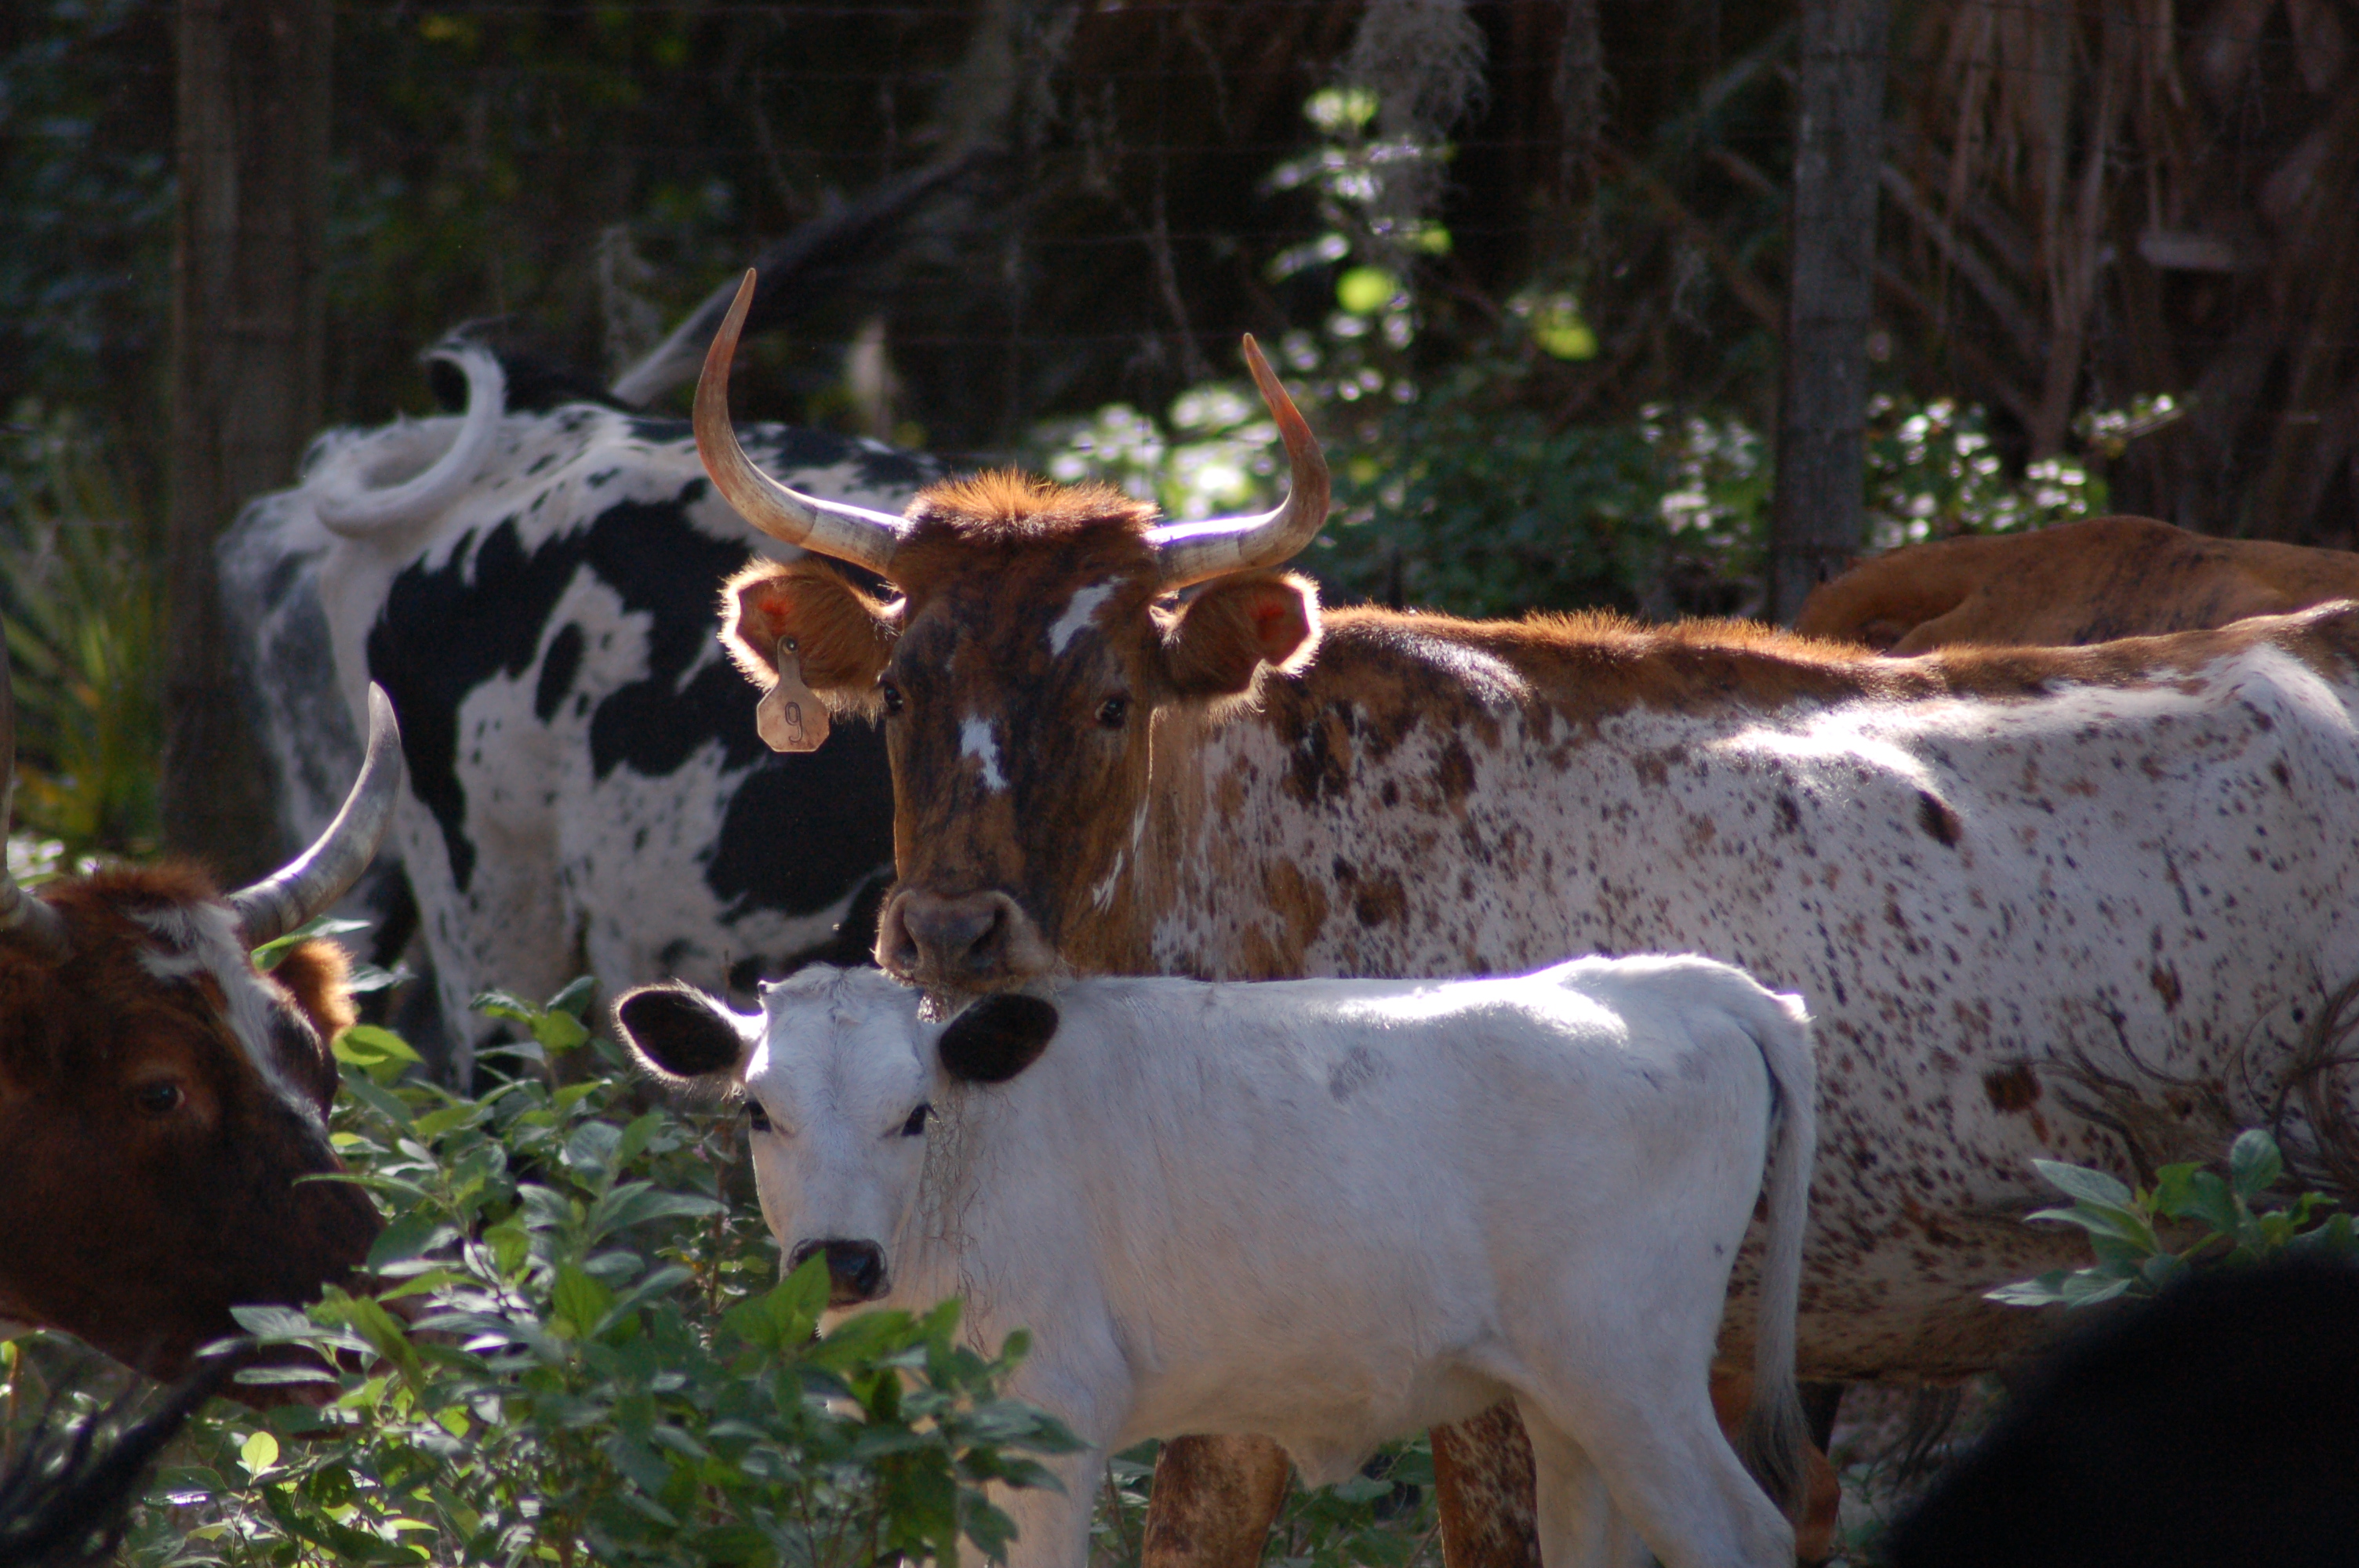 Cow and its calf at LKSP